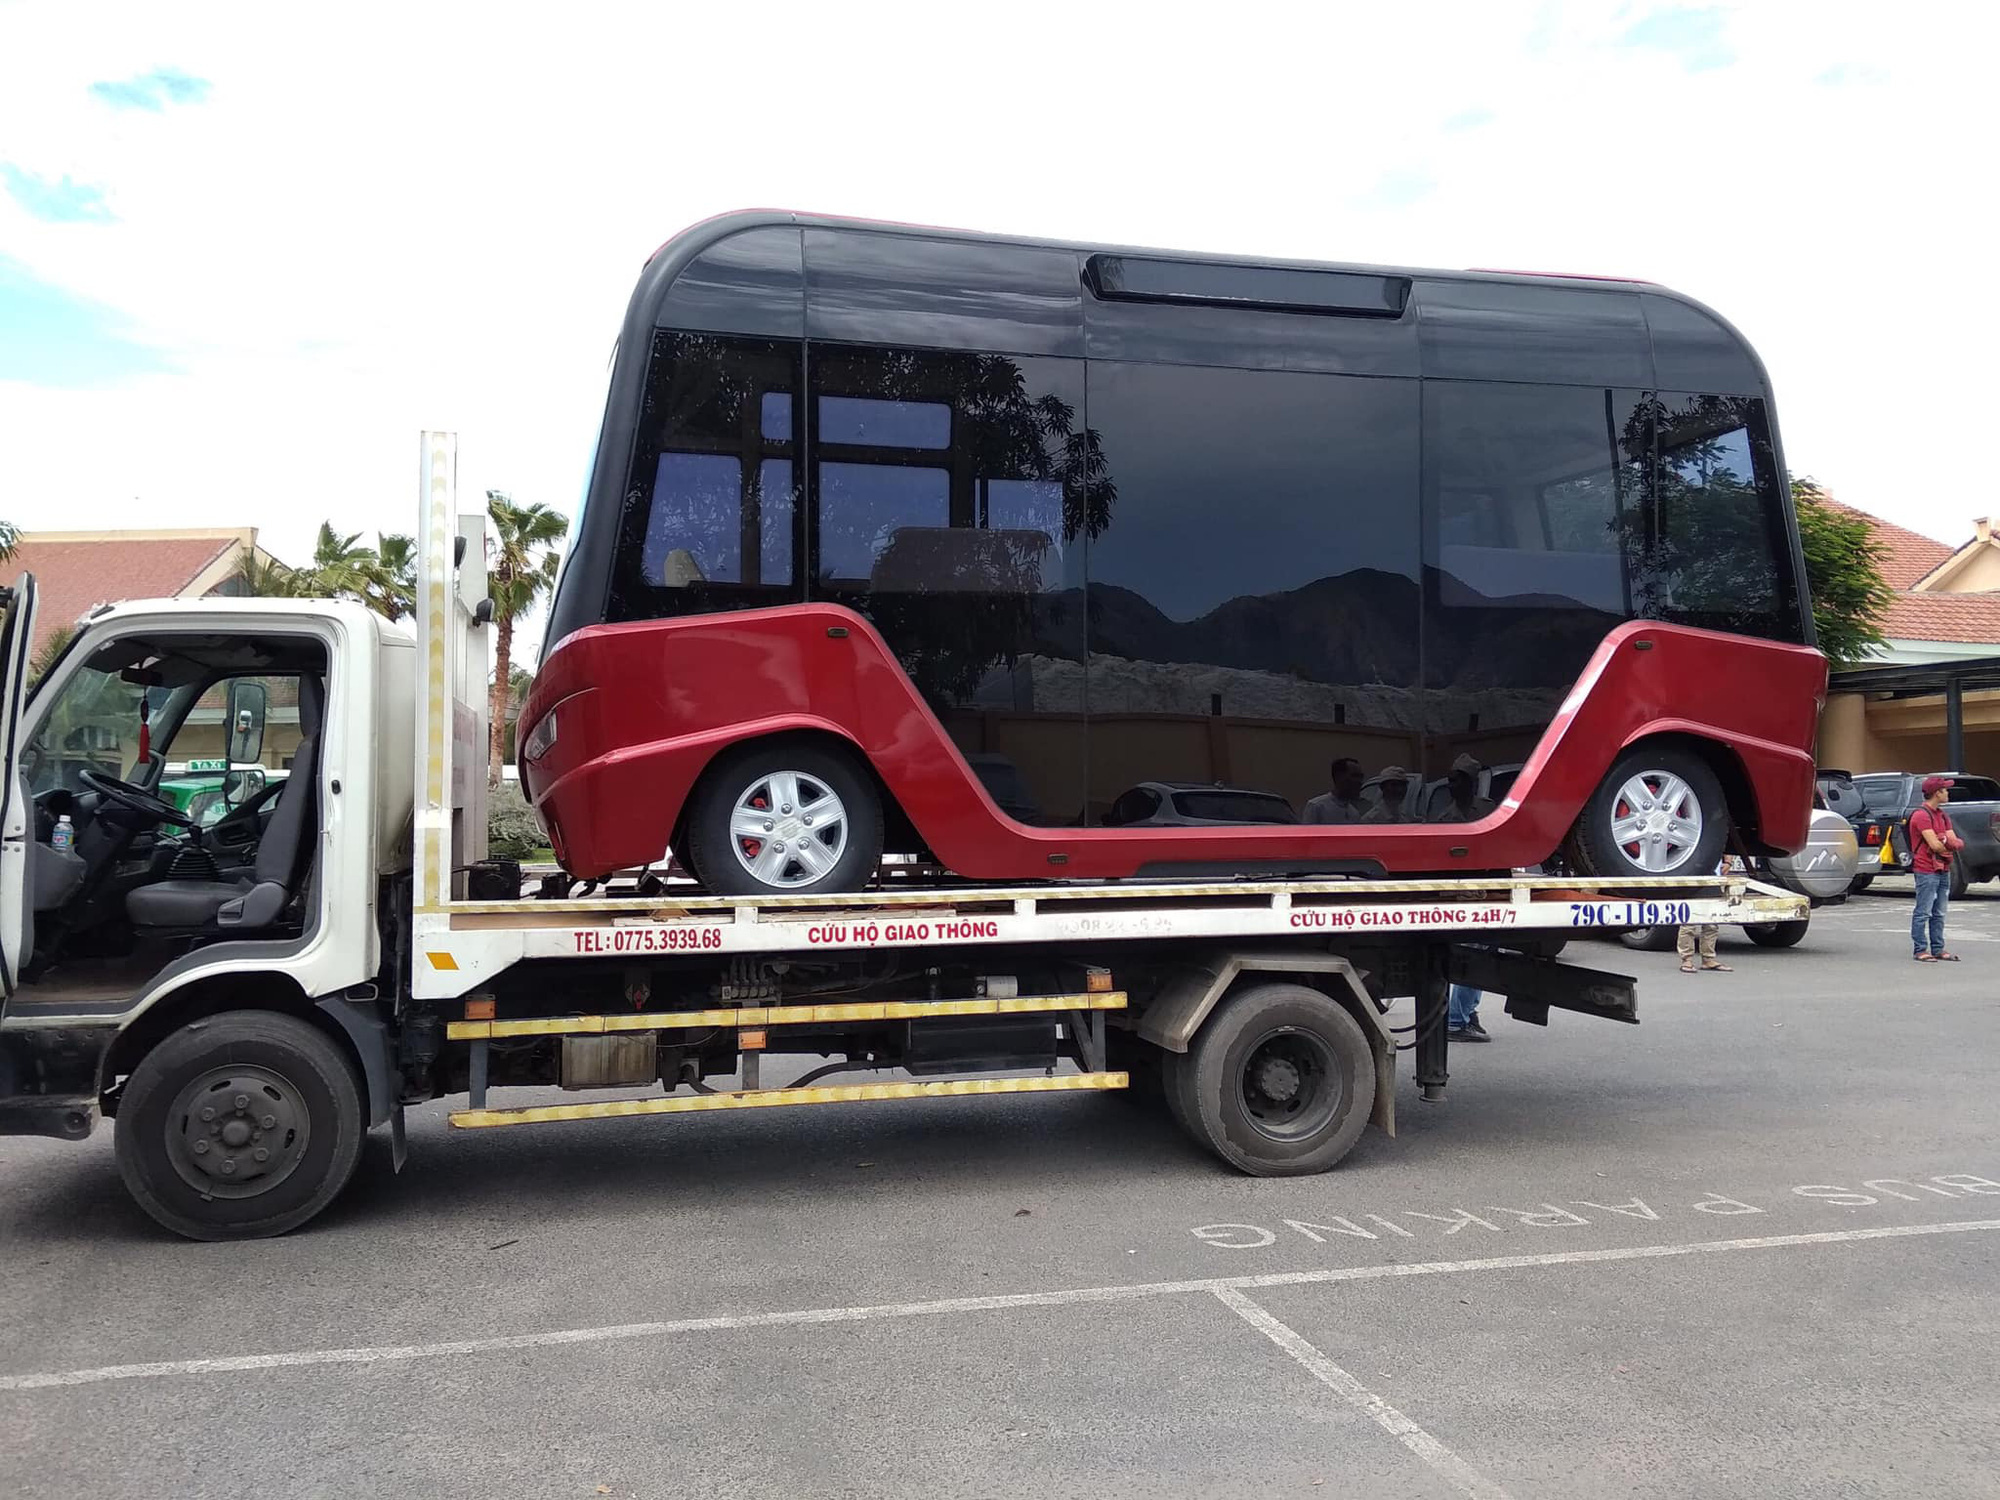 Chiếc xe của VinFast trên đường vận chuyển về Nha Trang